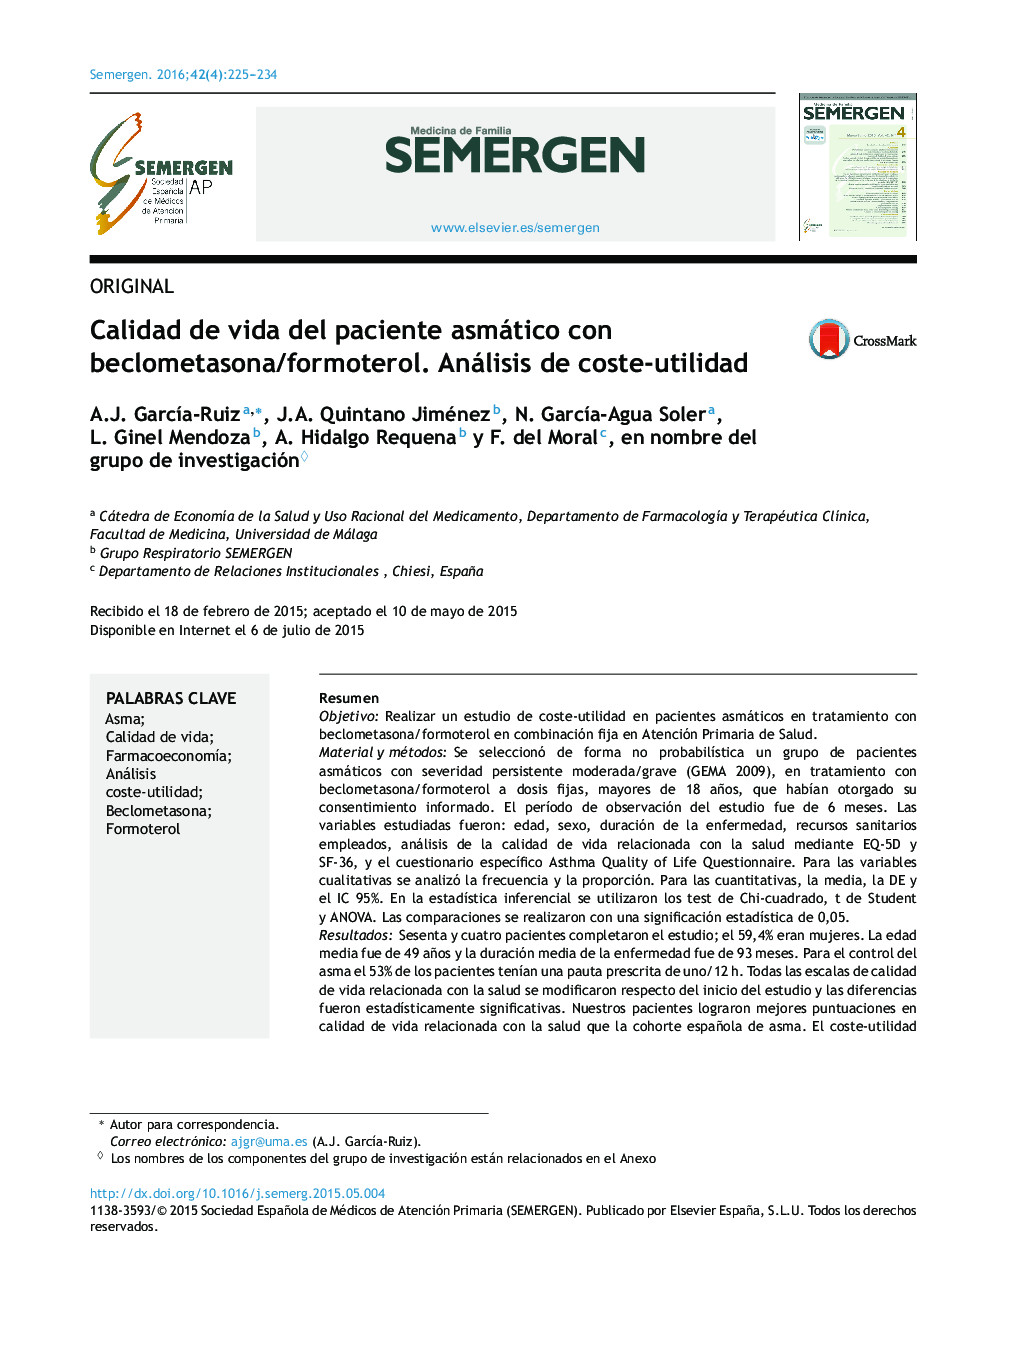 Calidad de vida del paciente asmático con beclometasona/formoterol. Análisis de coste-utilidad